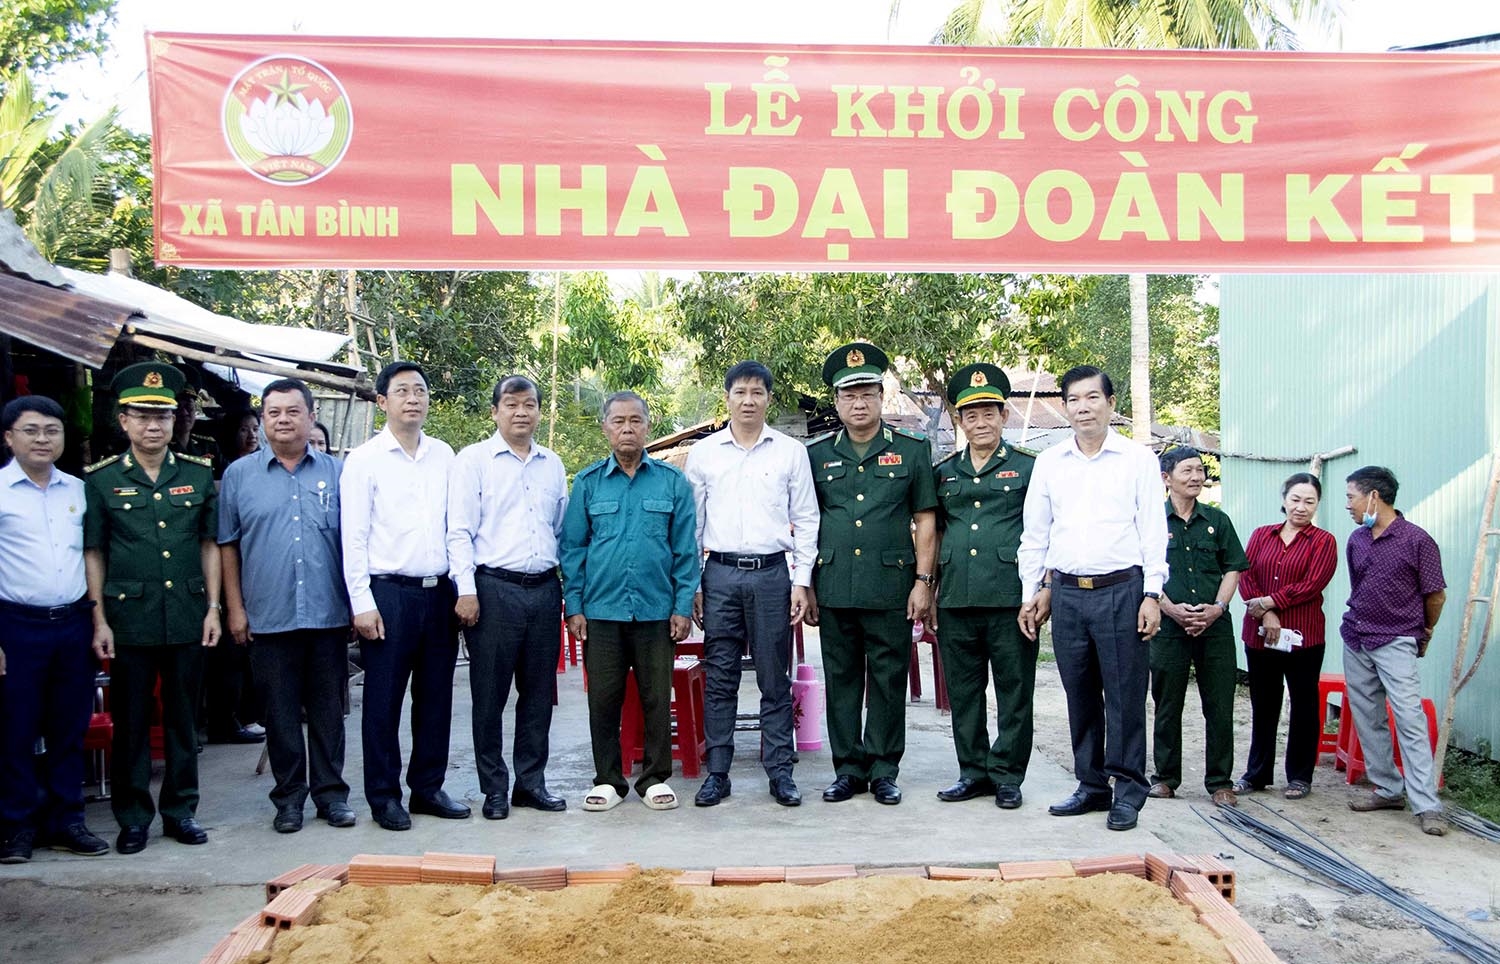 Thiếu tướng Nguyễn Hoài Phương (thứ 3 bên phải qua) và ông Nguyễn Thành Tâm - Bí thư Tỉnh ủy, đến thăm và dự Lễ khởi công nhà Đại đoàn kết